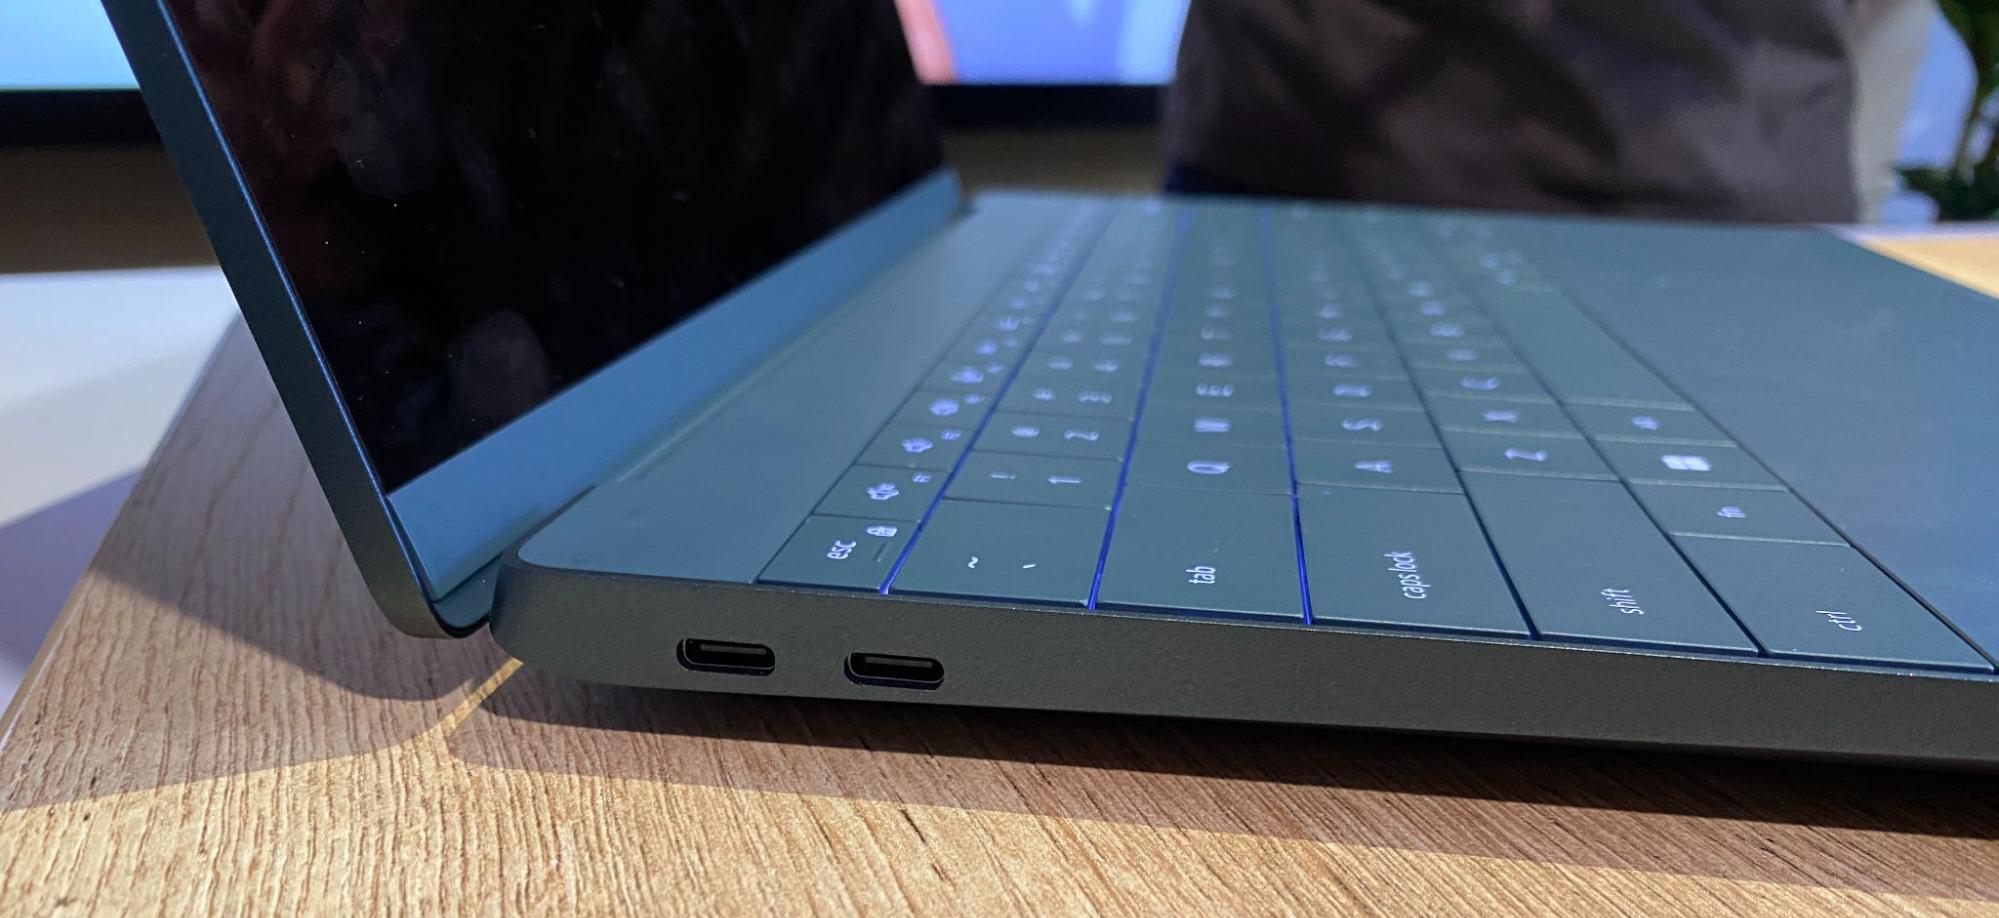 Dell Luna concept laptop